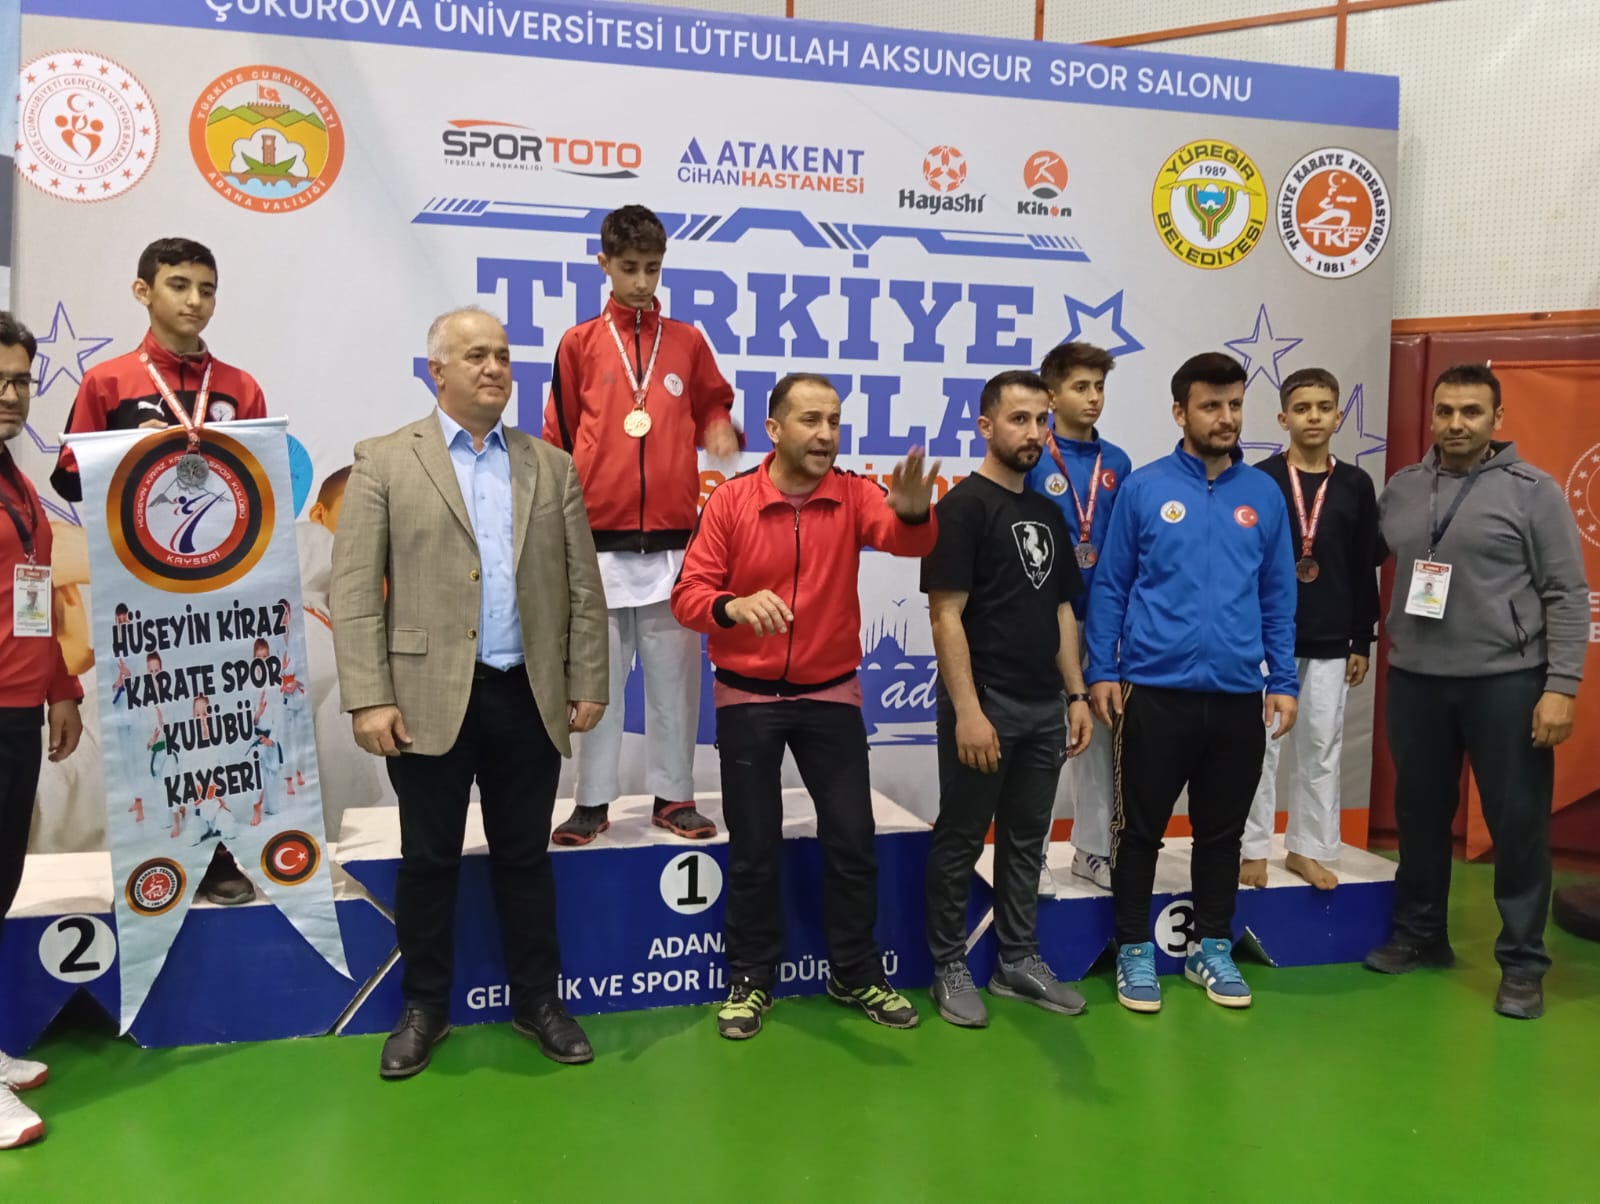 Şanlıurfa'dan 3 sporcu milli takımda!  Balkan Şampiyonasında Türkiye'yi temsil edecekler